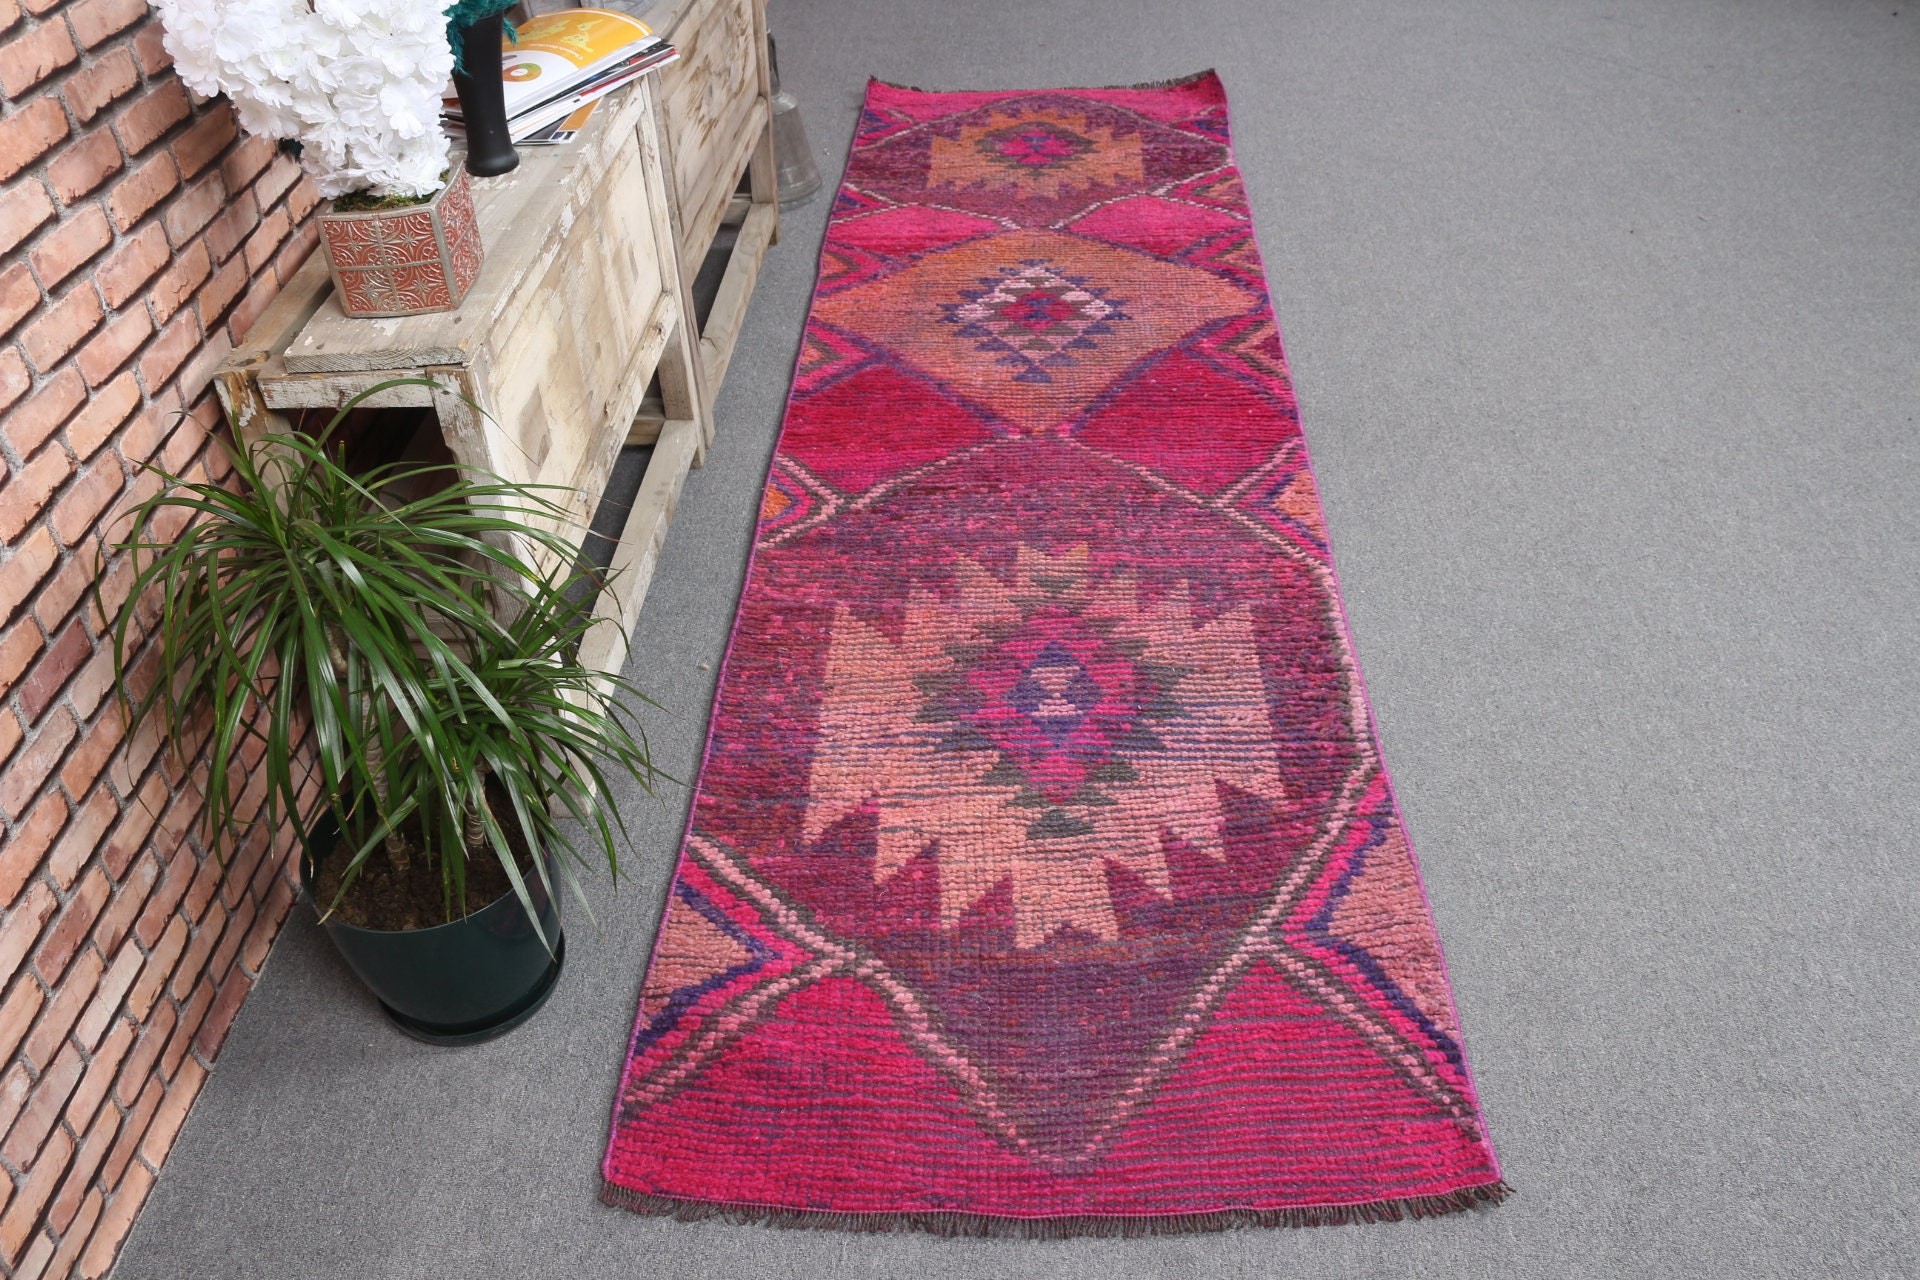 Kitchen Rug, Turkish Rug, Vintage Rugs, Moroccan Rug, Stair Rugs, Pink Bedroom Rug, Rugs for Hallway, Office Rugs, 2.8x9.4 ft Runner Rug